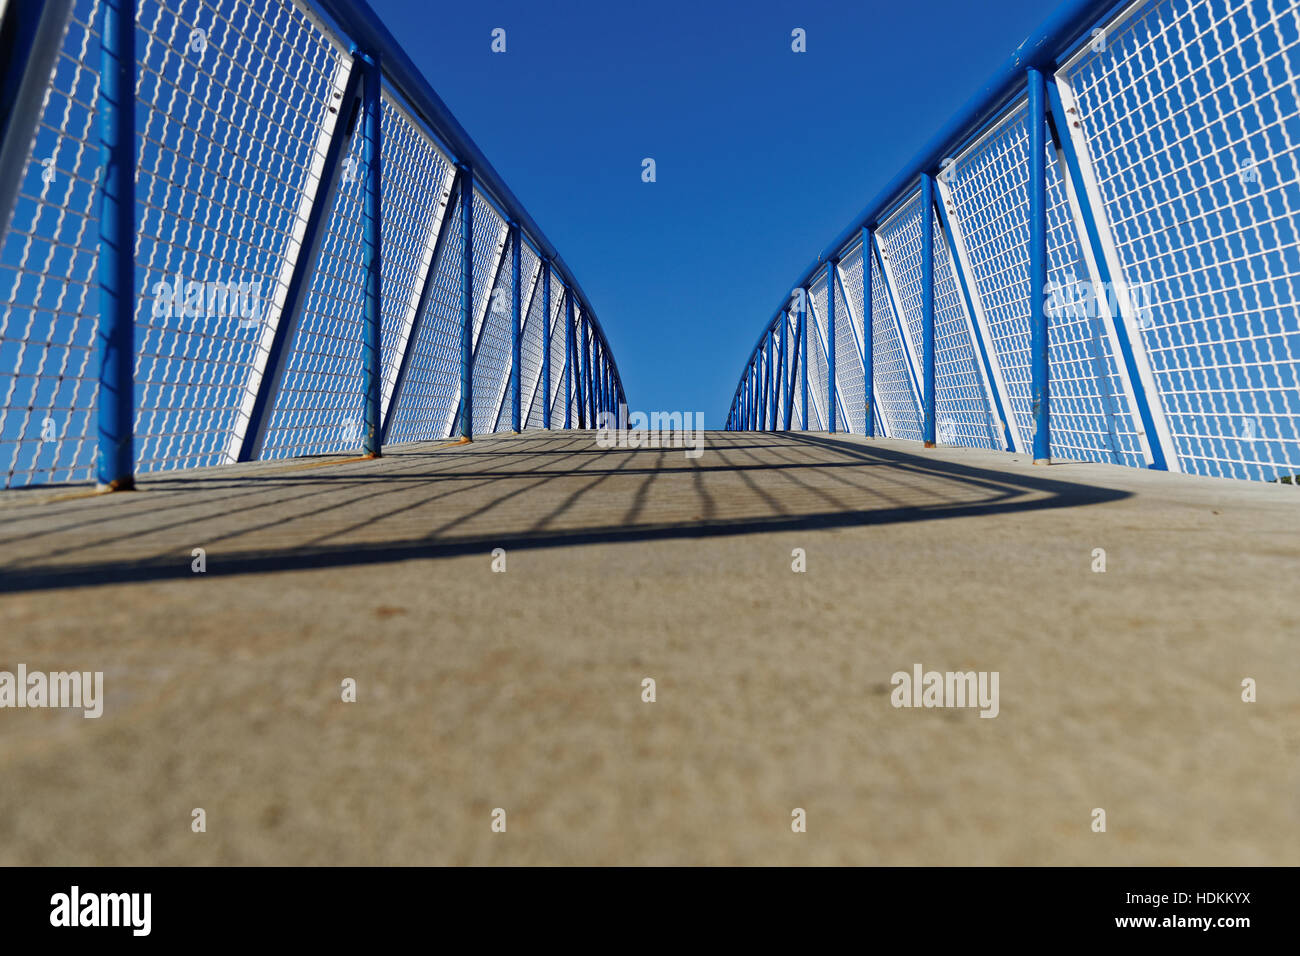 white net fence on walkway bridge Stock Photo